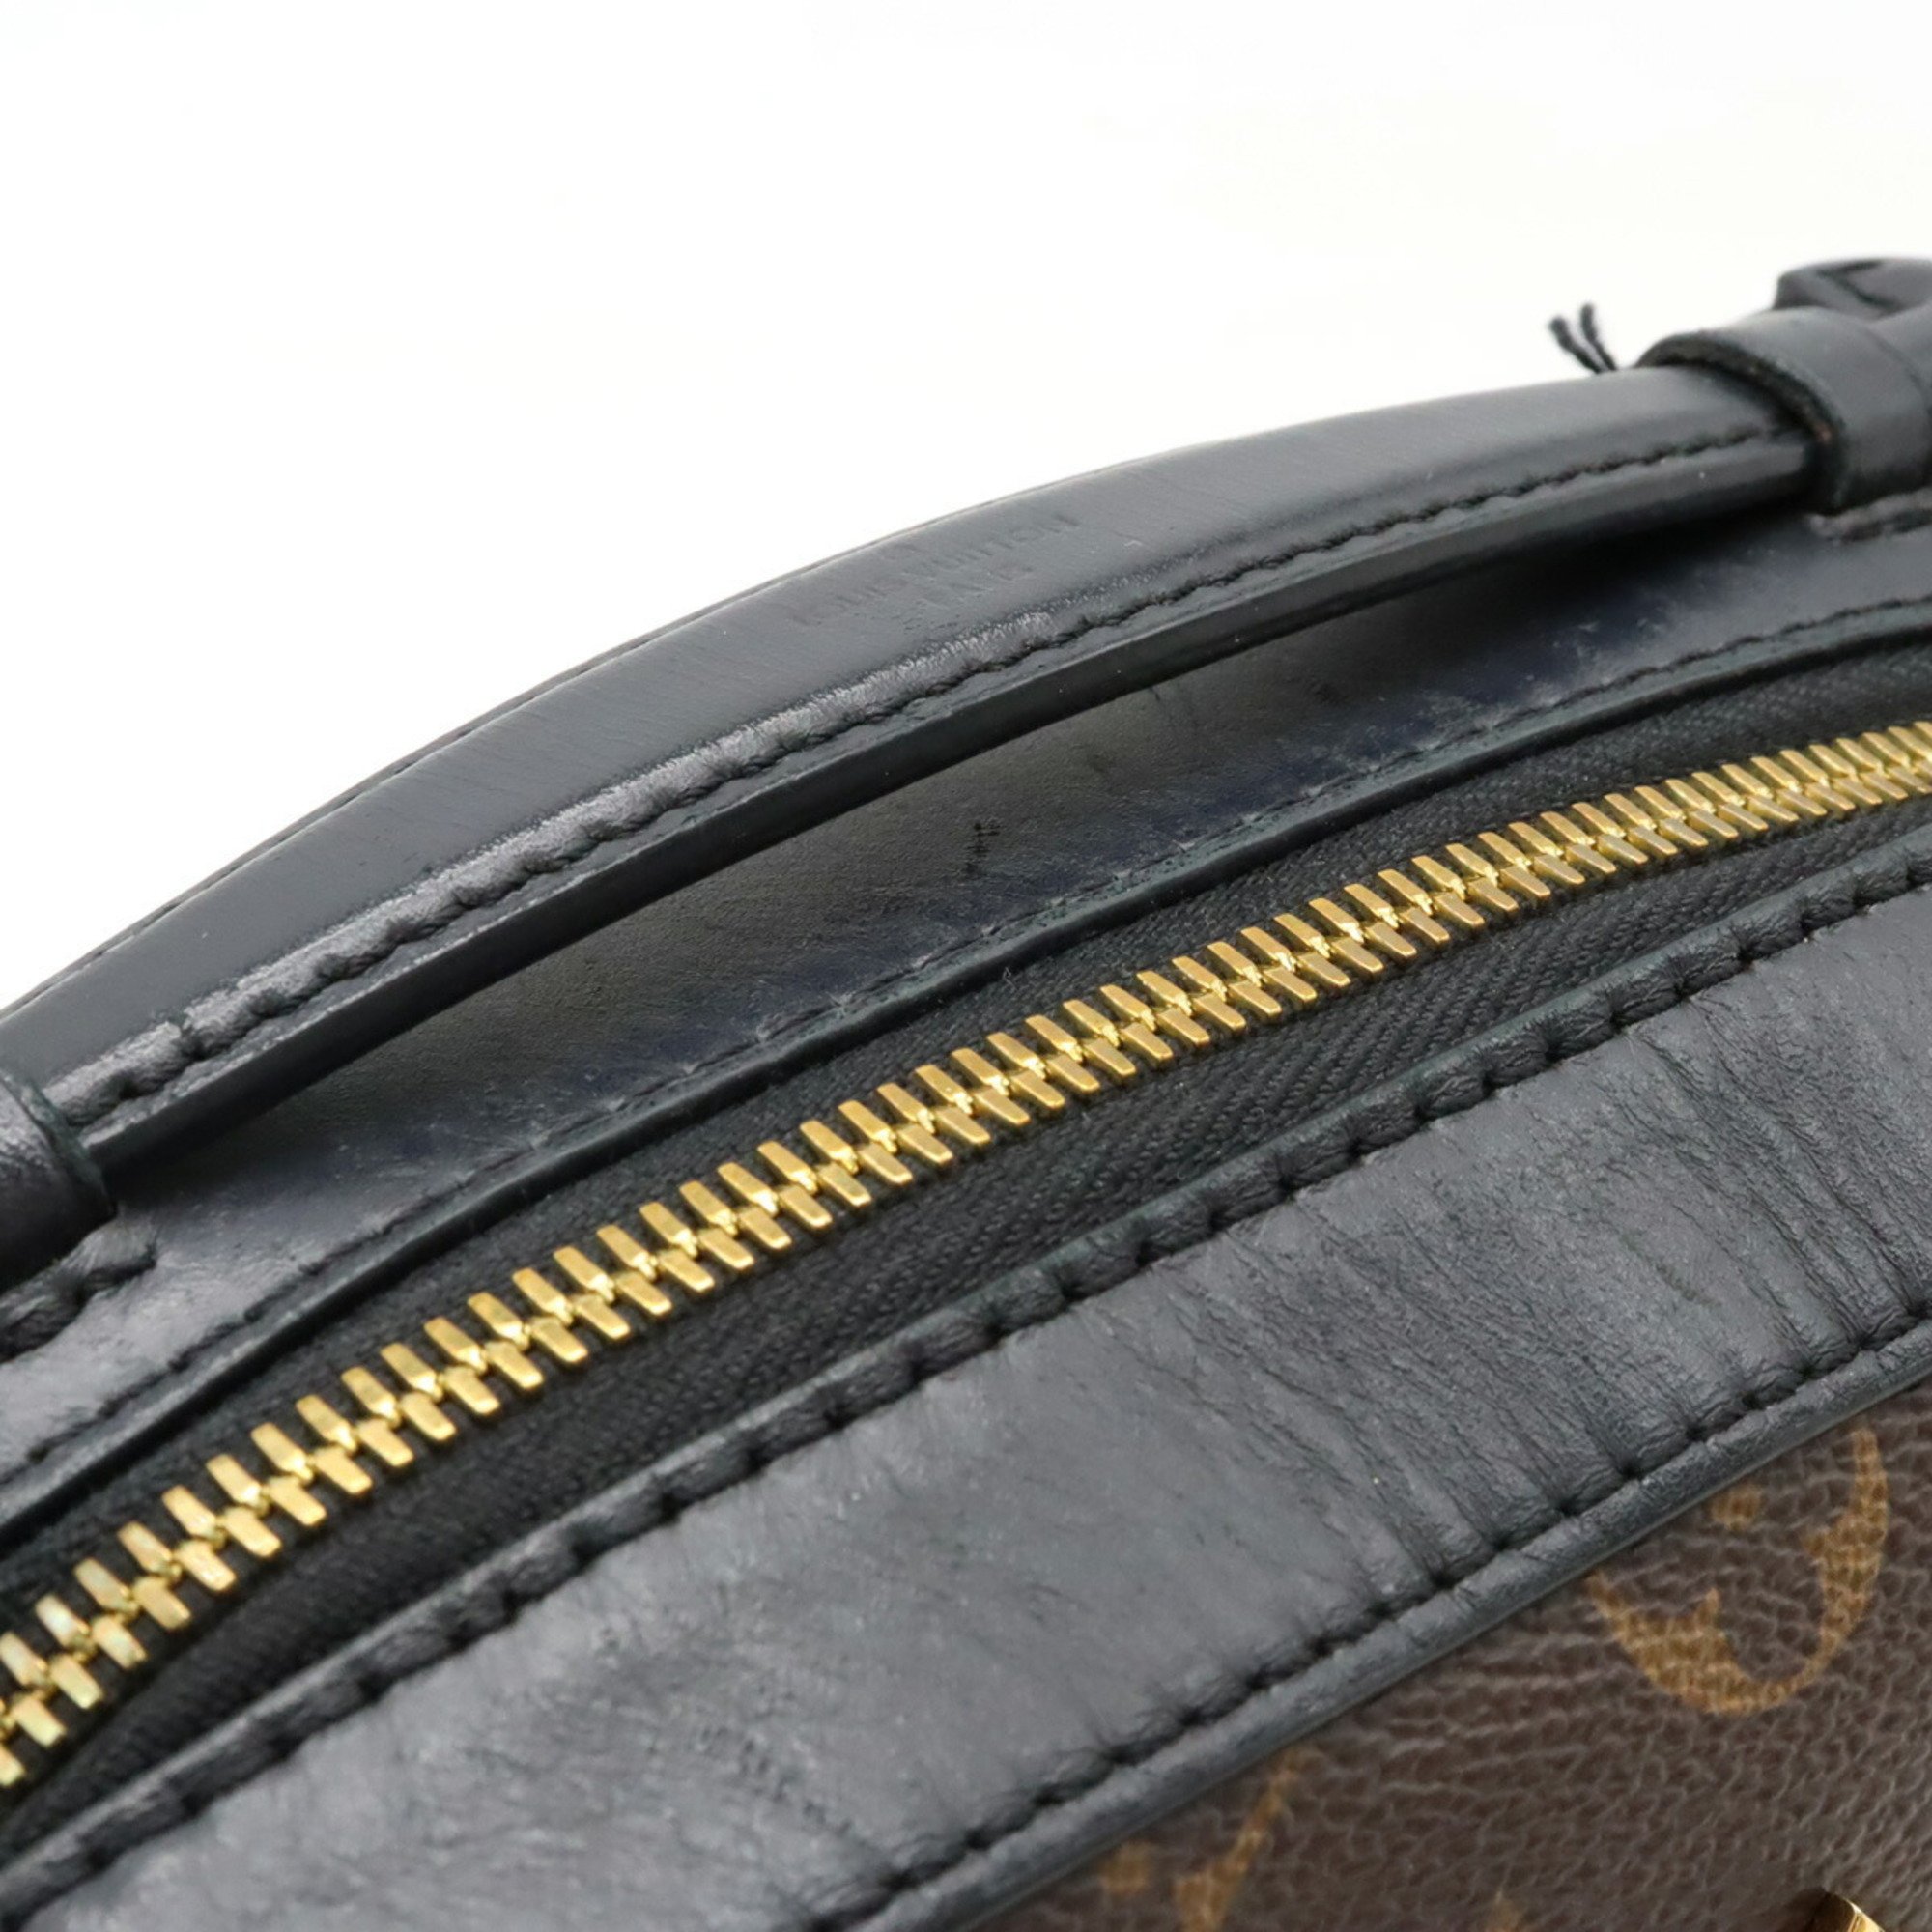 LOUIS VUITTON Louis Vuitton Monogram Santonge Shoulder Bag Handbag Tassel Leather Noir Black M43555